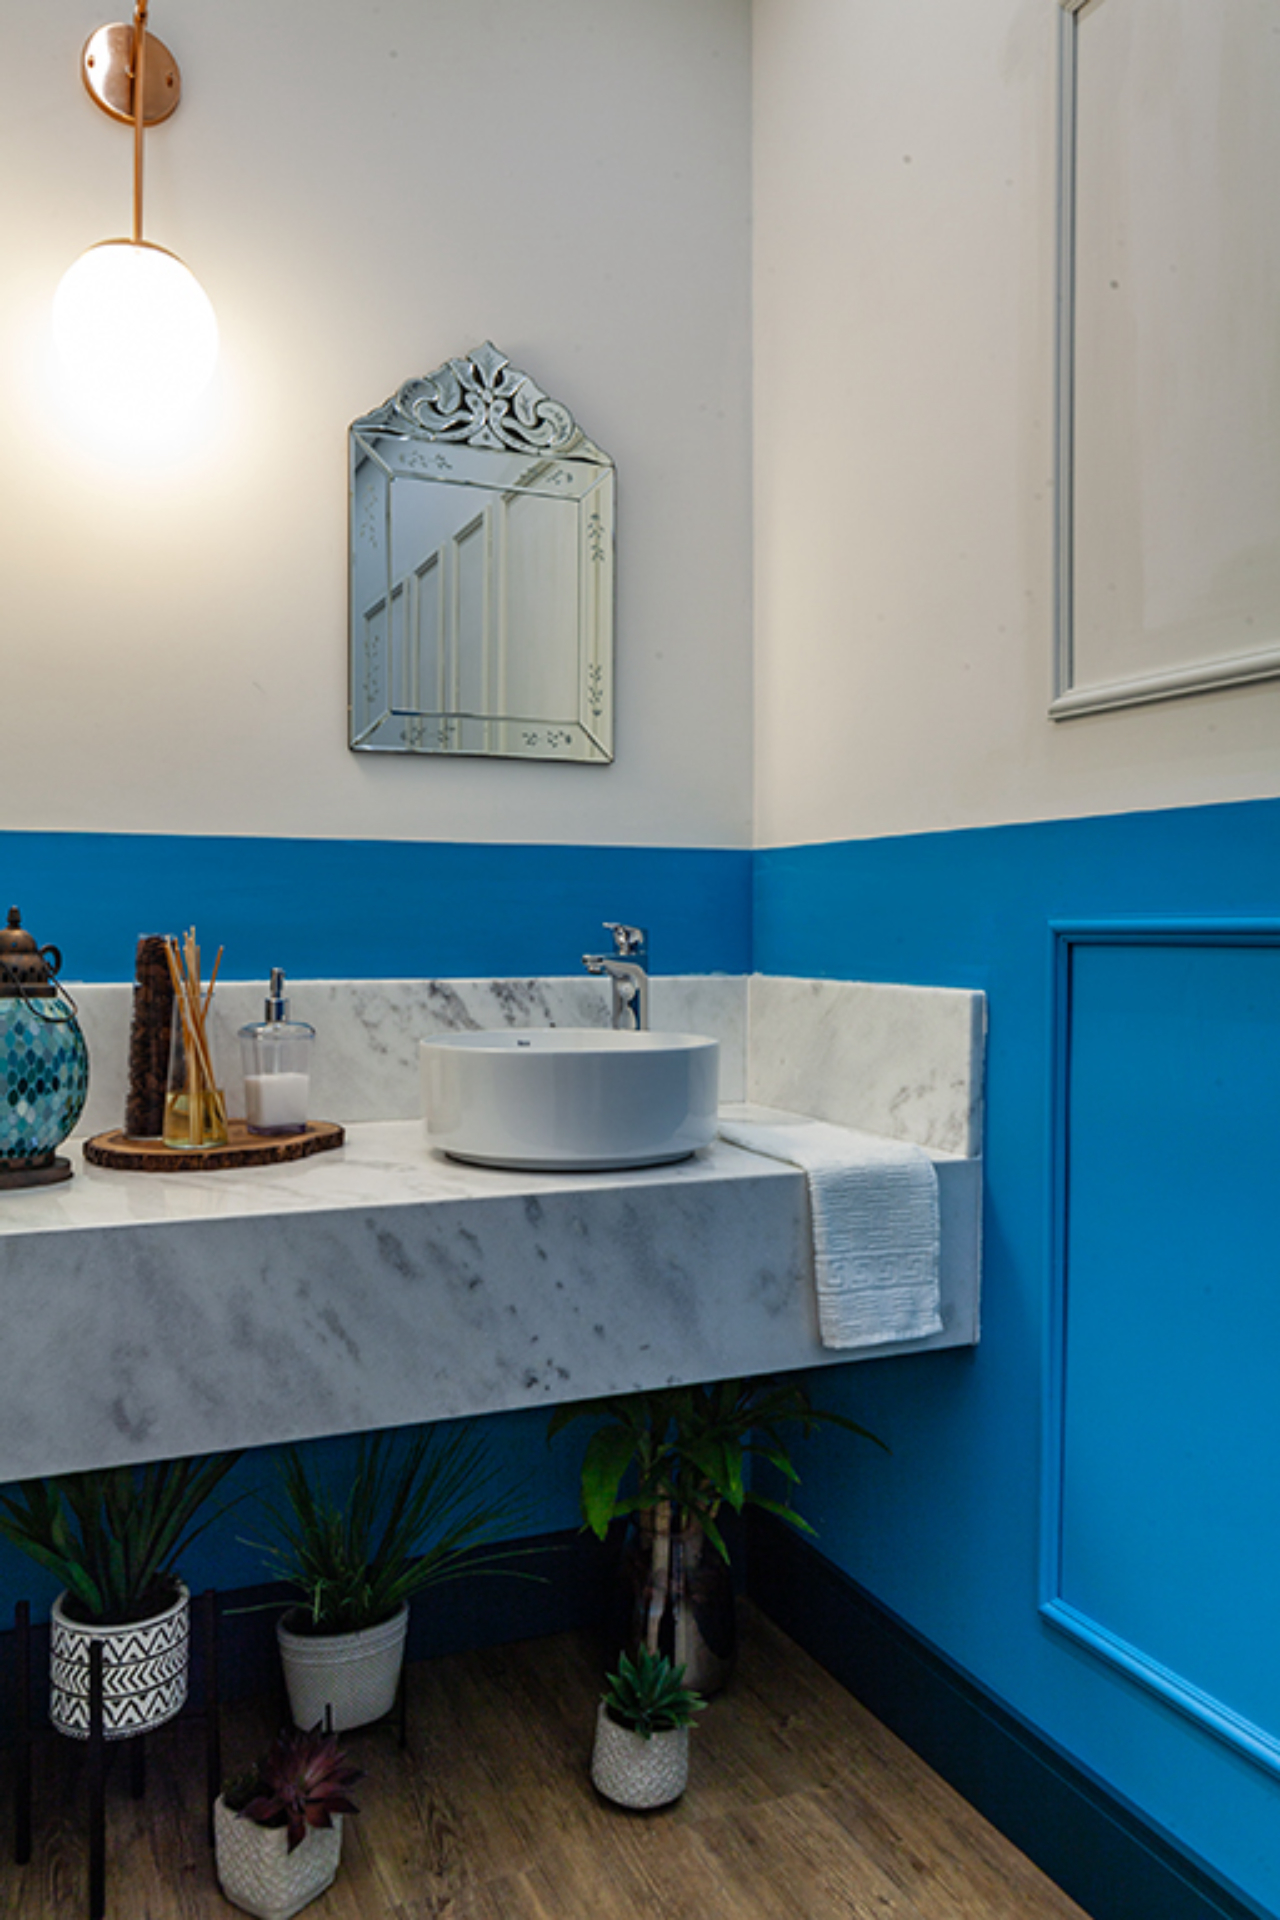 Banheiro projetado para a mostra Morar mais por menos 2019. Foto: Daniel Sorrentino / divulgação.